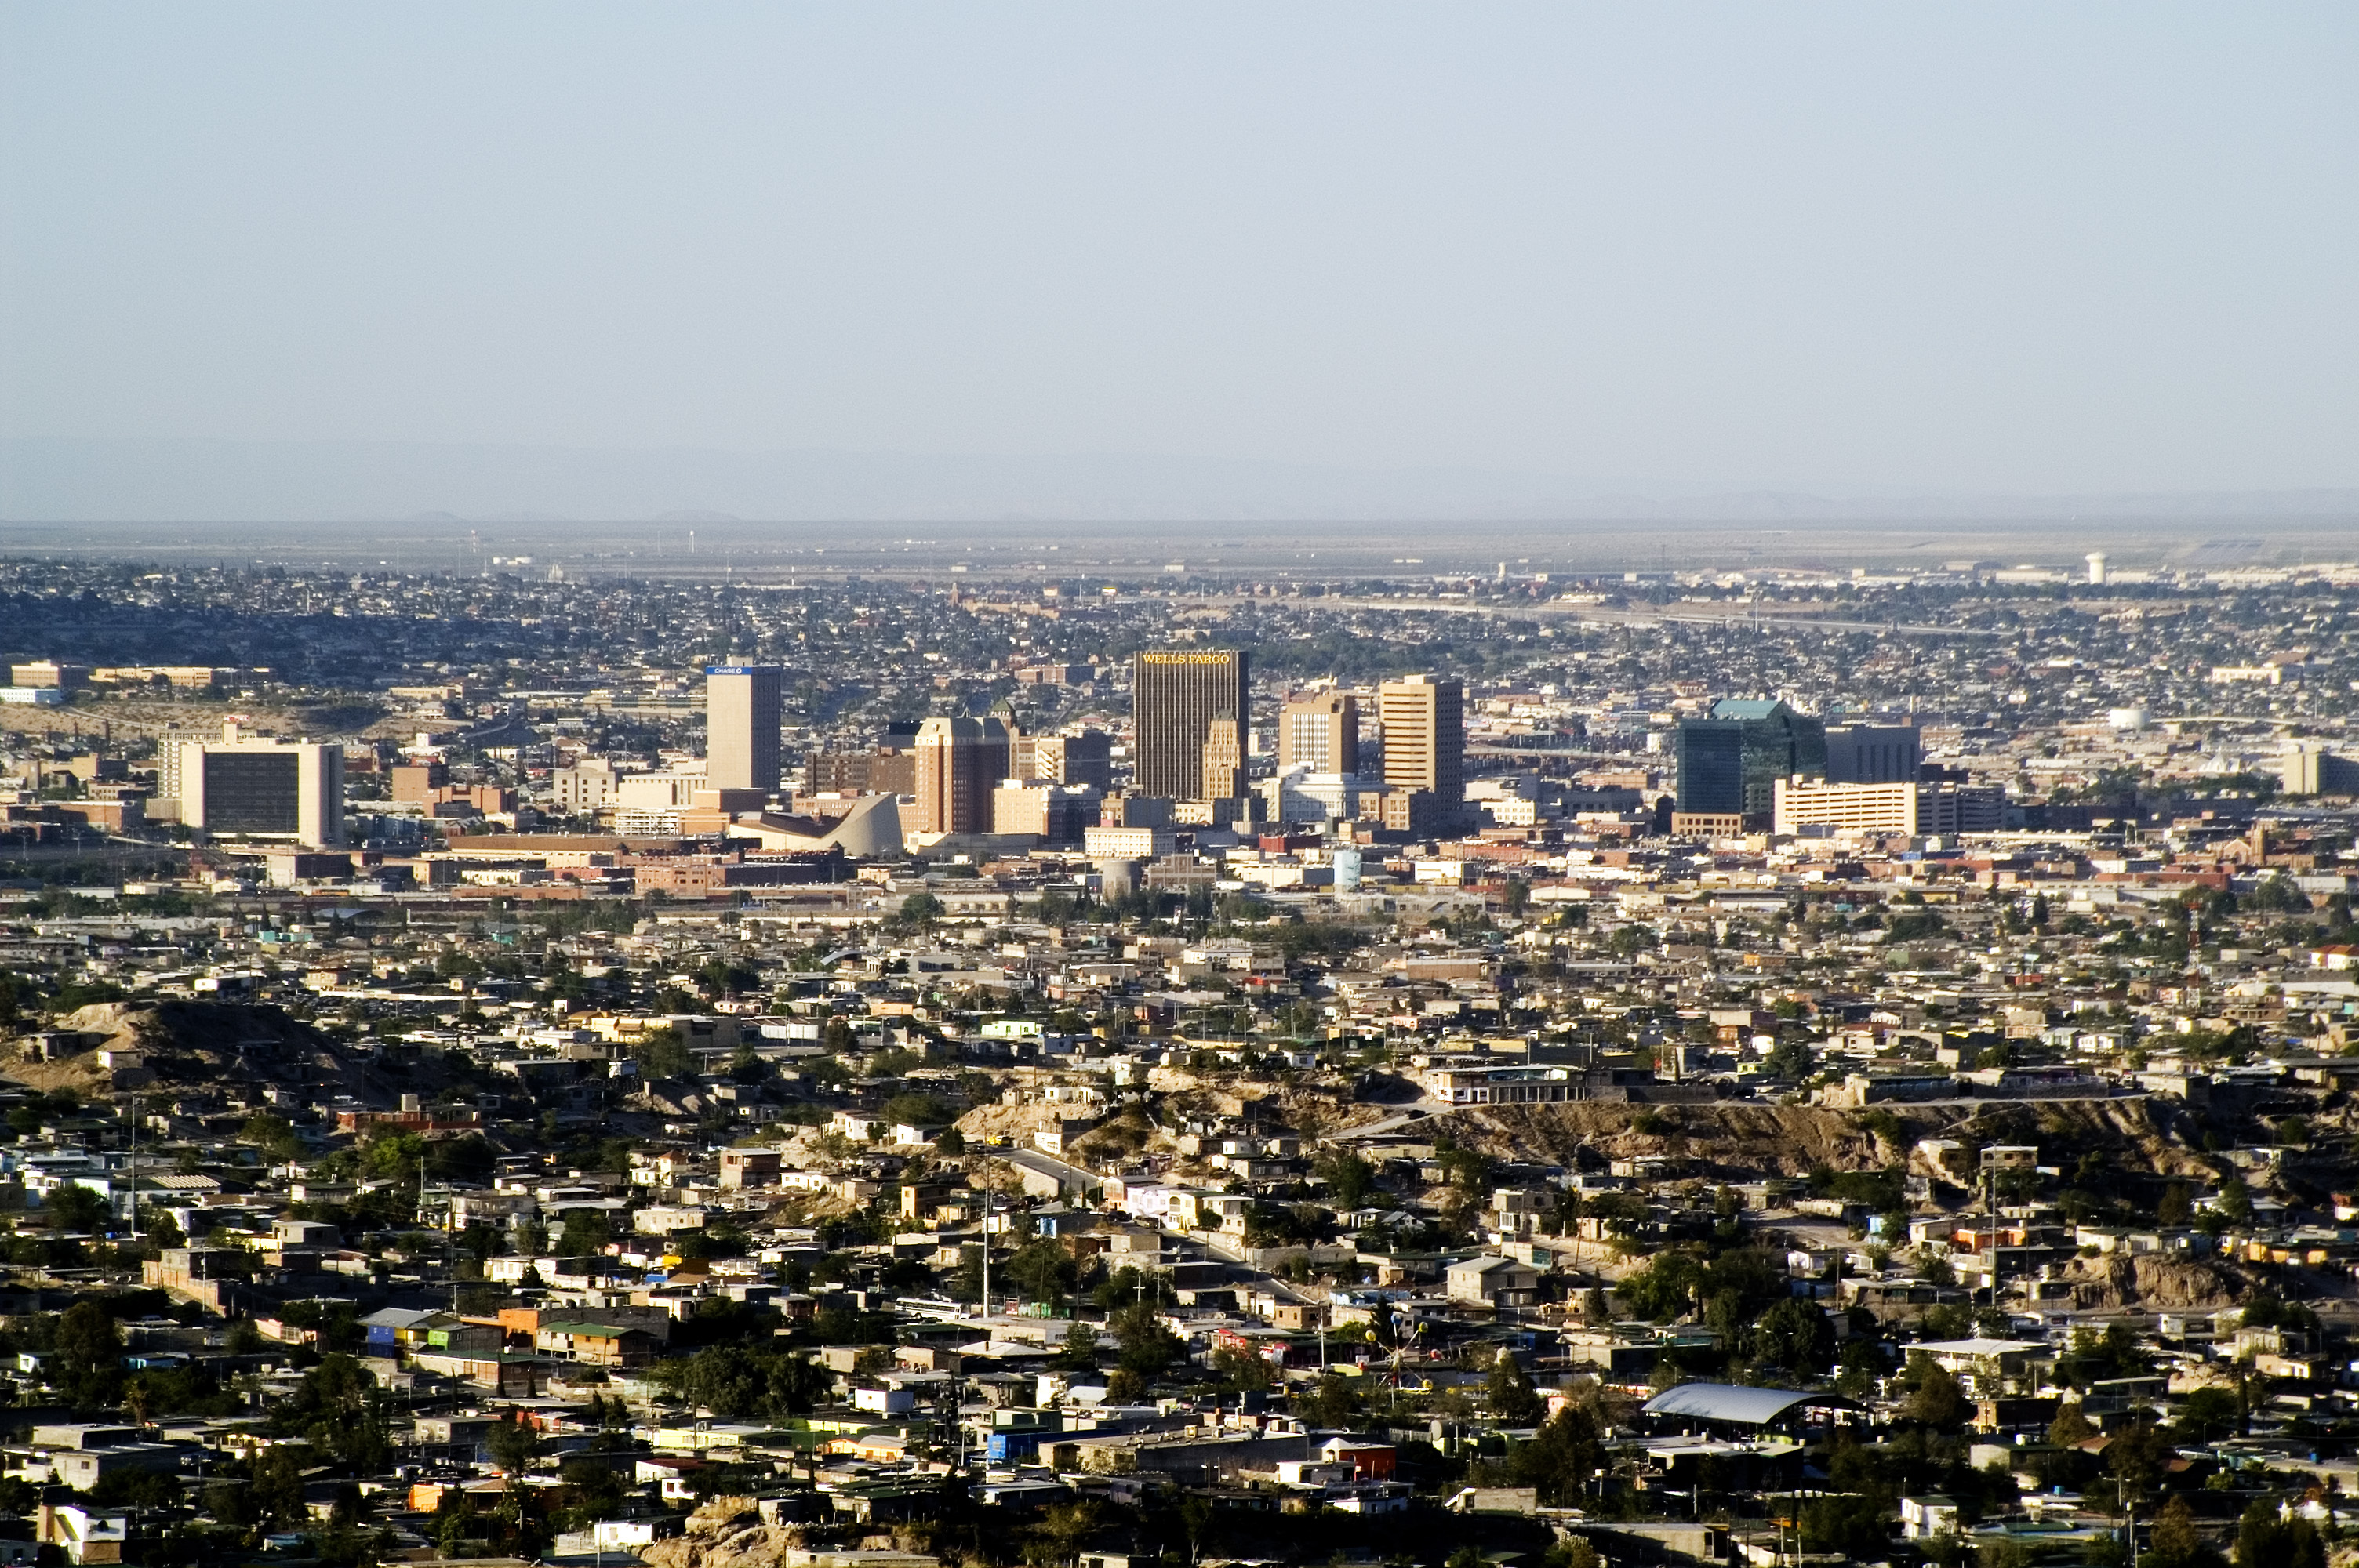 Ciudad Juárez, tierra de nadie Viva Mexico